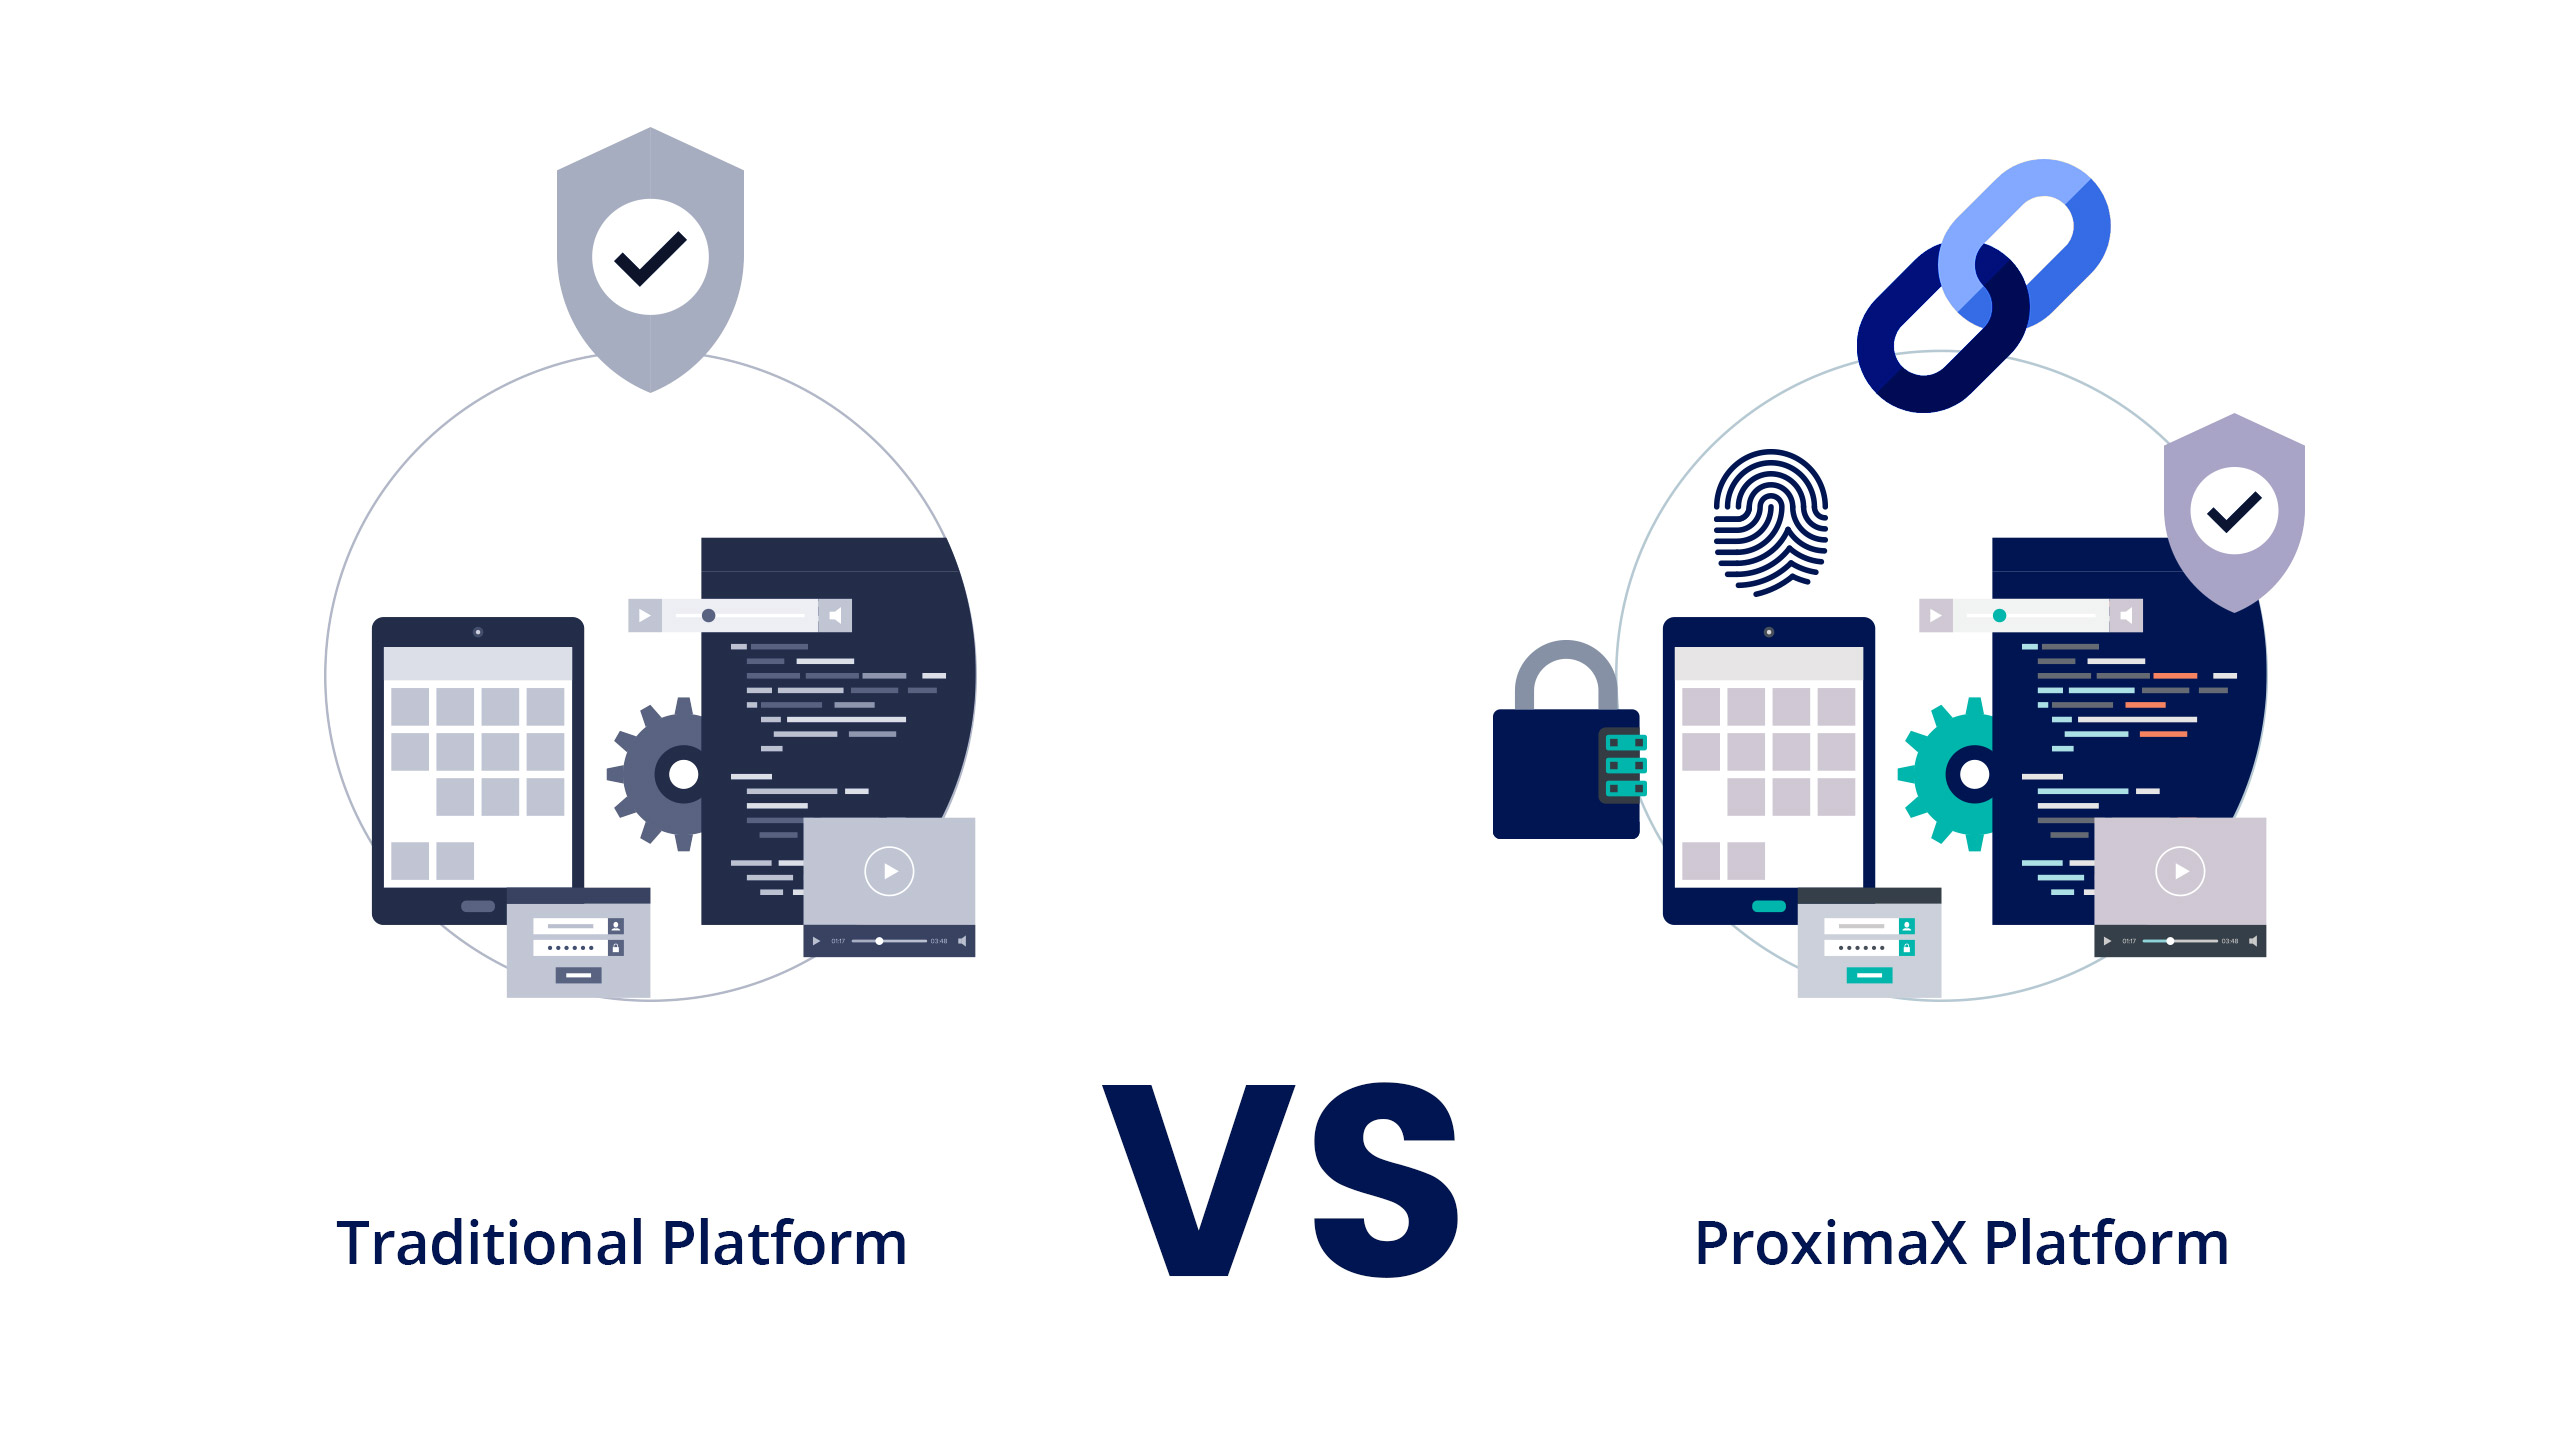  ProximaX platform